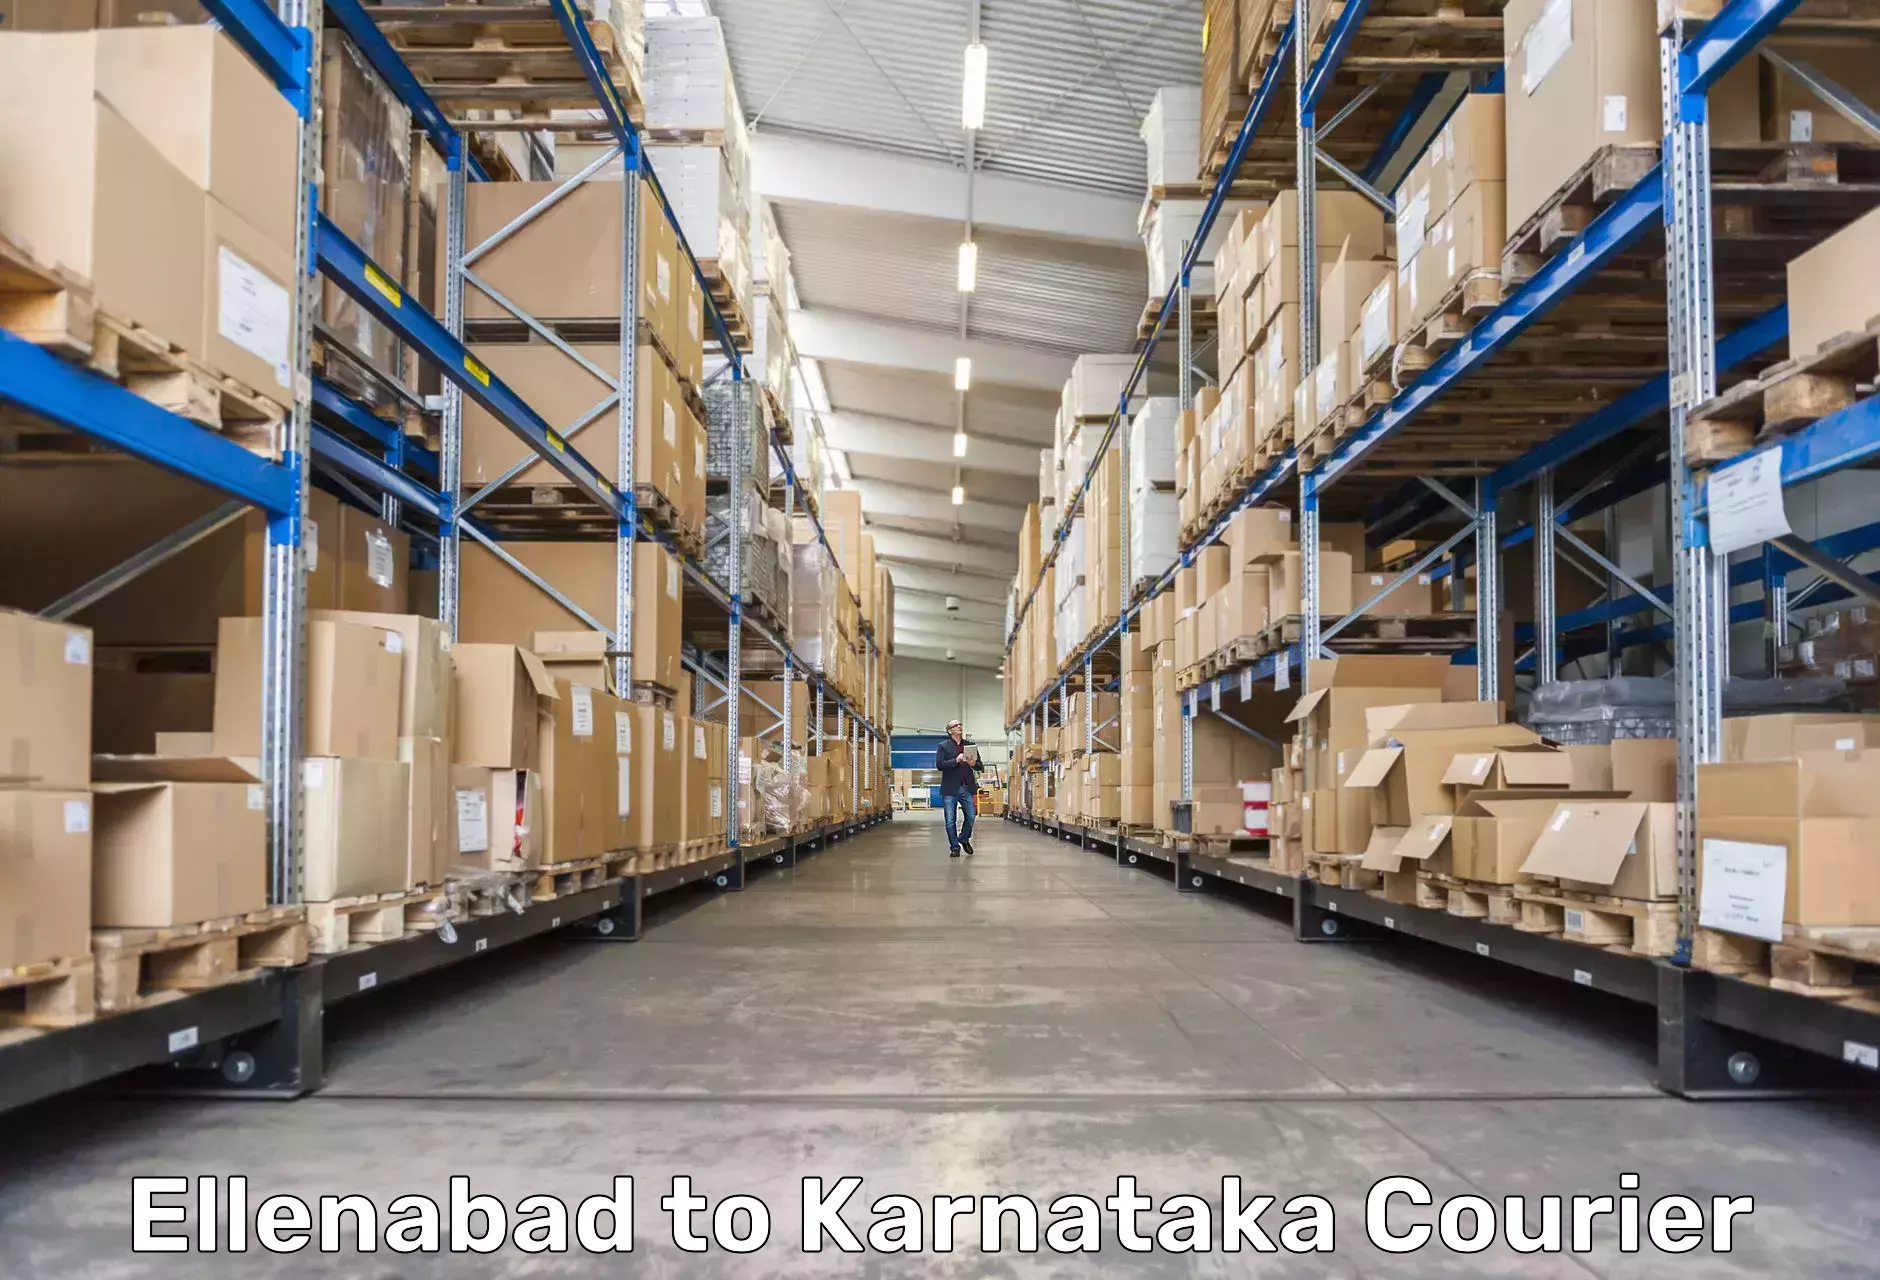 Global shipping solutions Ellenabad to Karnataka